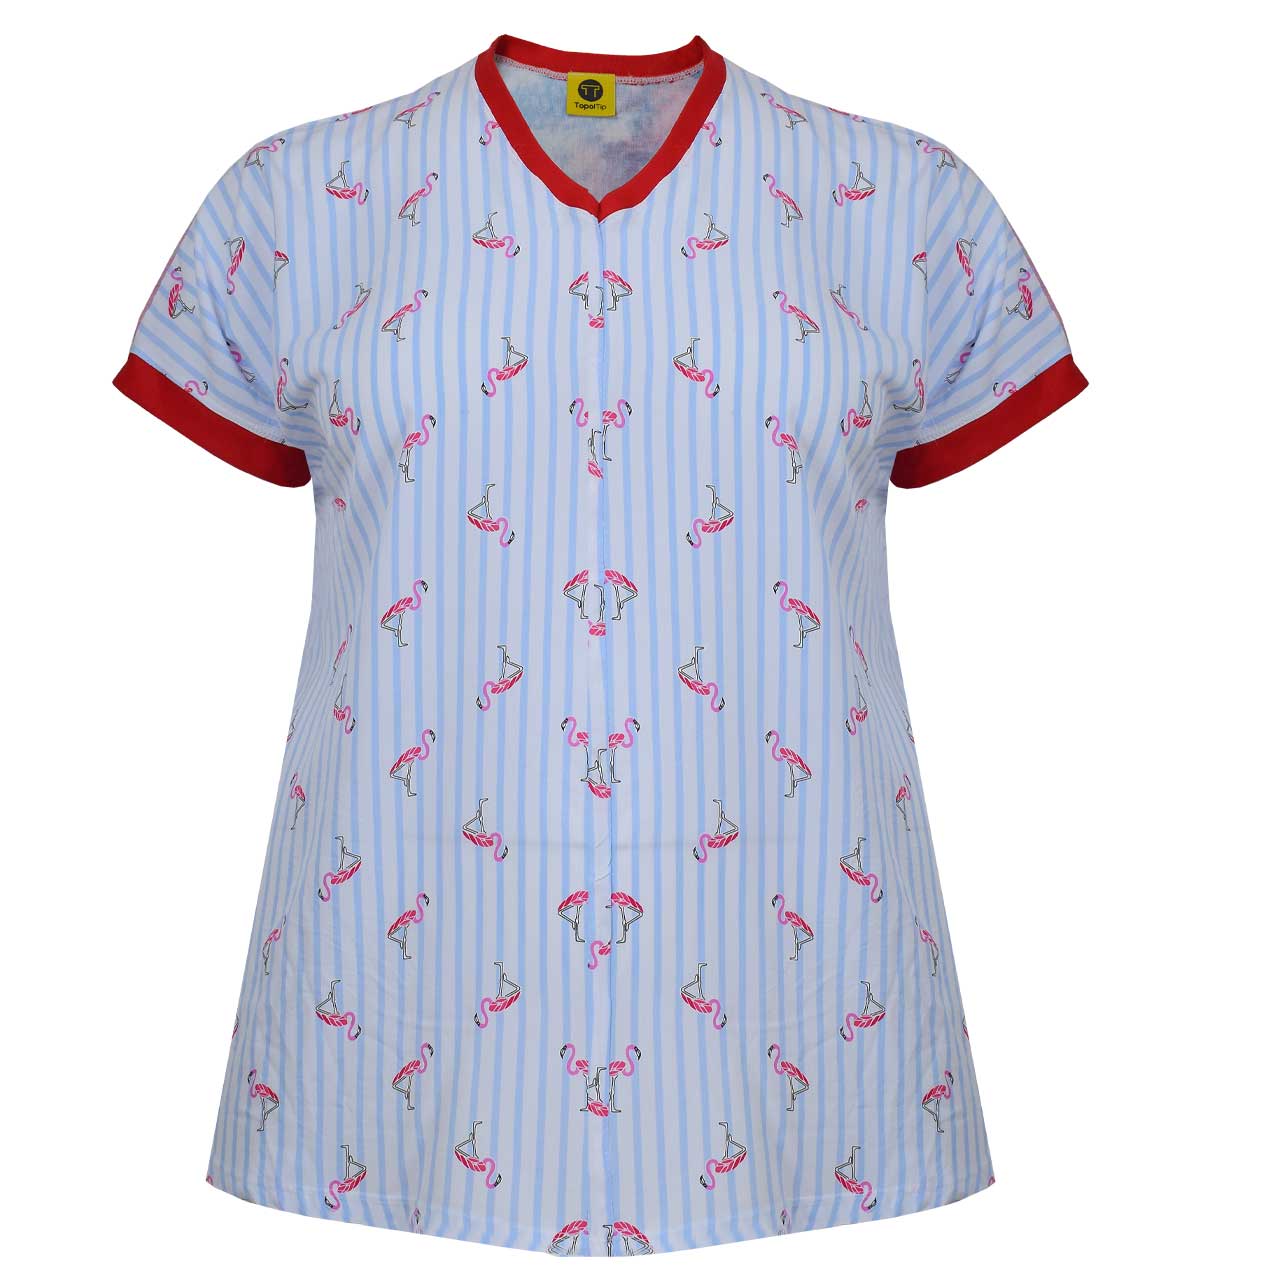 تی شرت زنانه تپل تیپ کد 0001-155